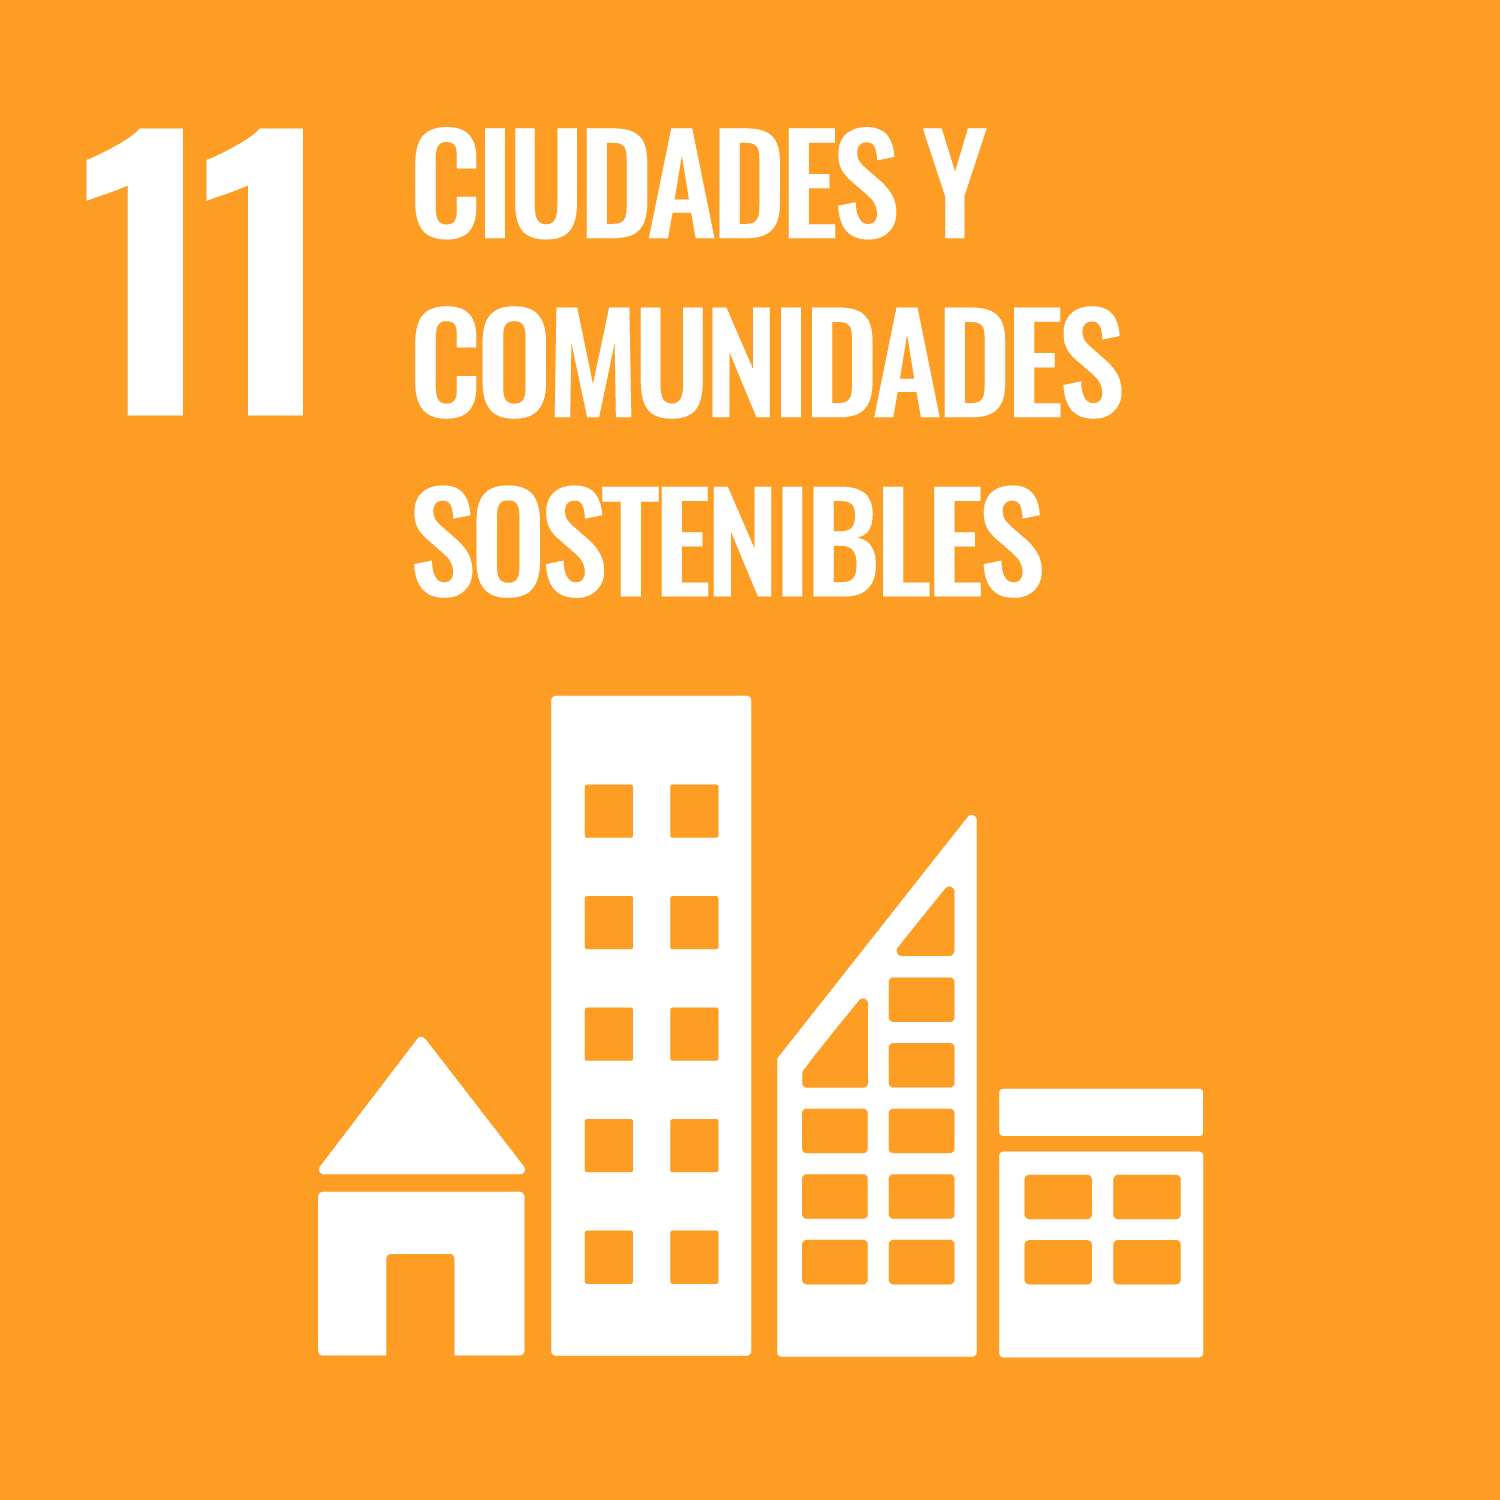 Lograr que las ciudades y los asentamientos humanos sean inclusivos, seguros, resilientes y sostenibles.